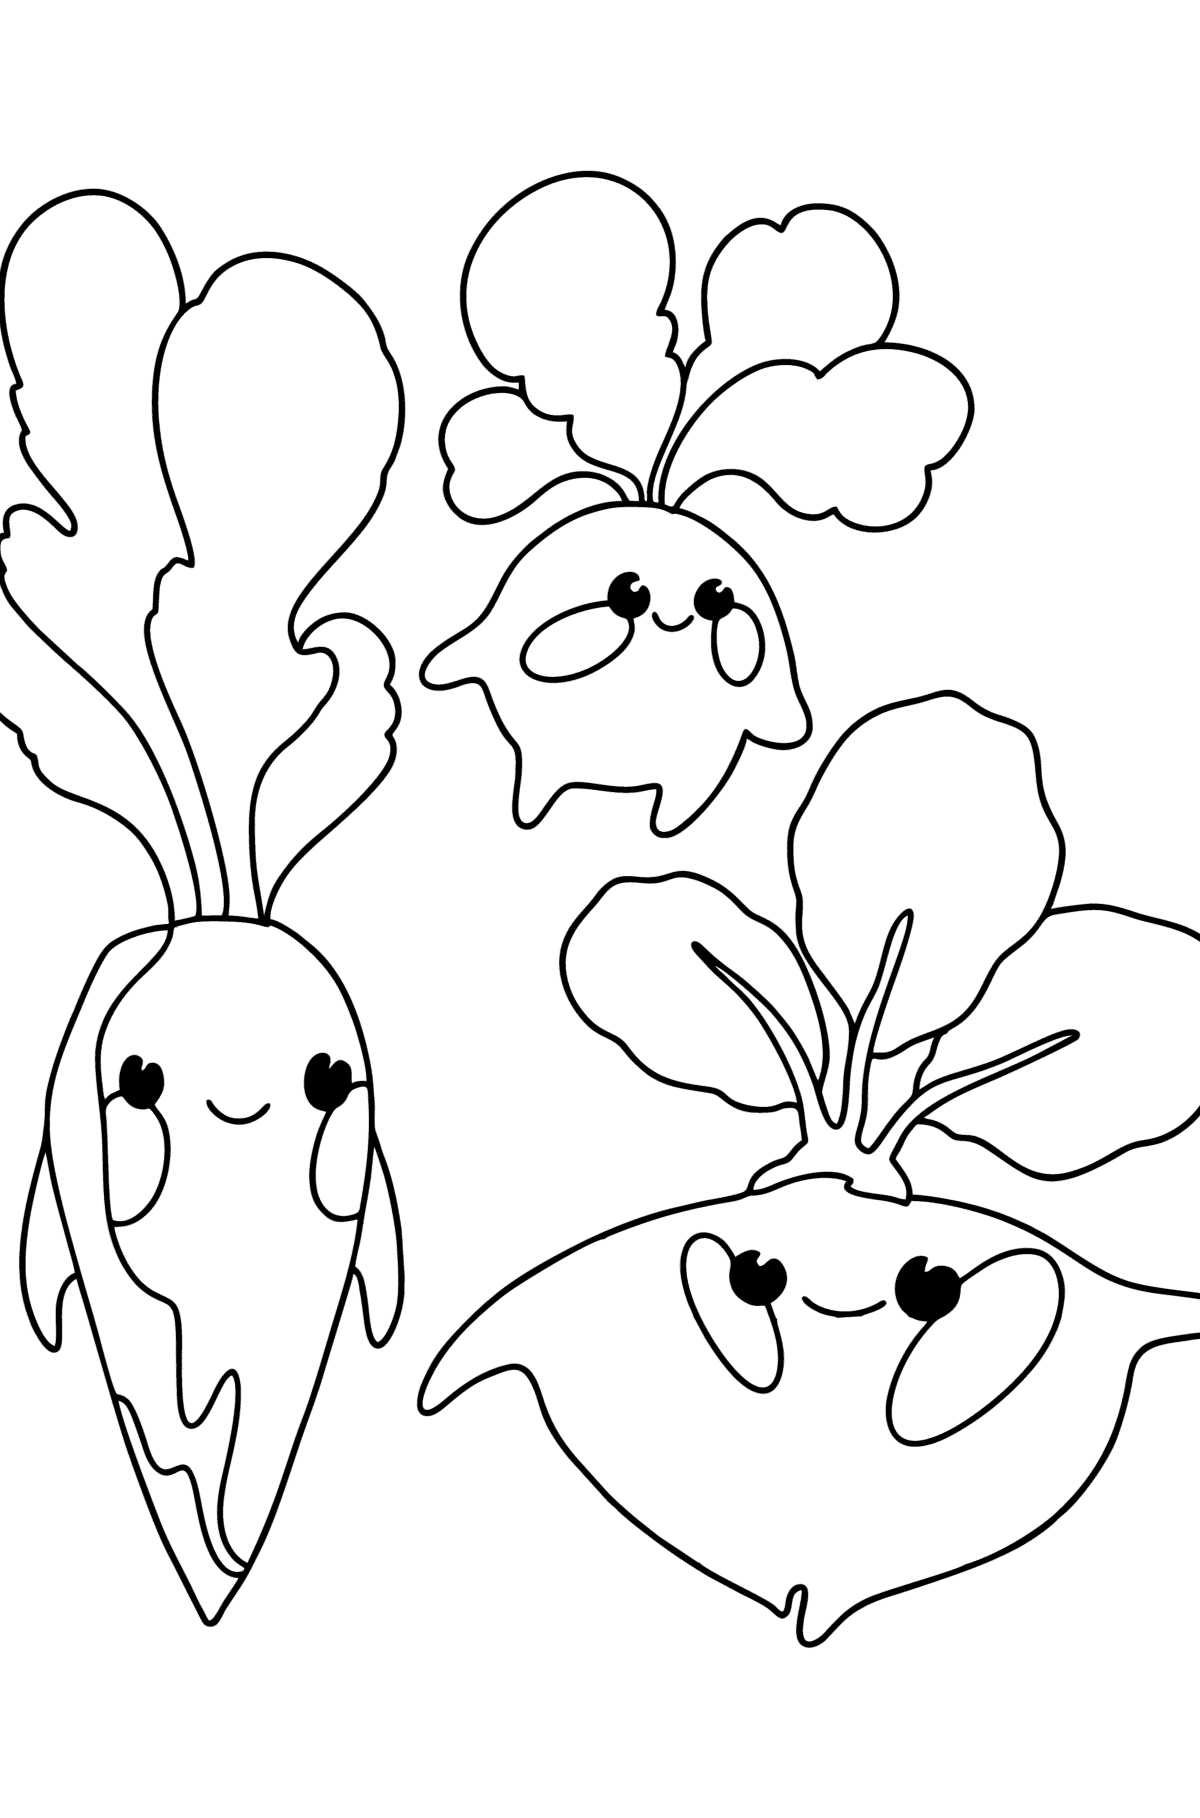 Tegning til farvning Grøntsager: daikon, radise, rødbeder - Tegninger til farvelægning for børn